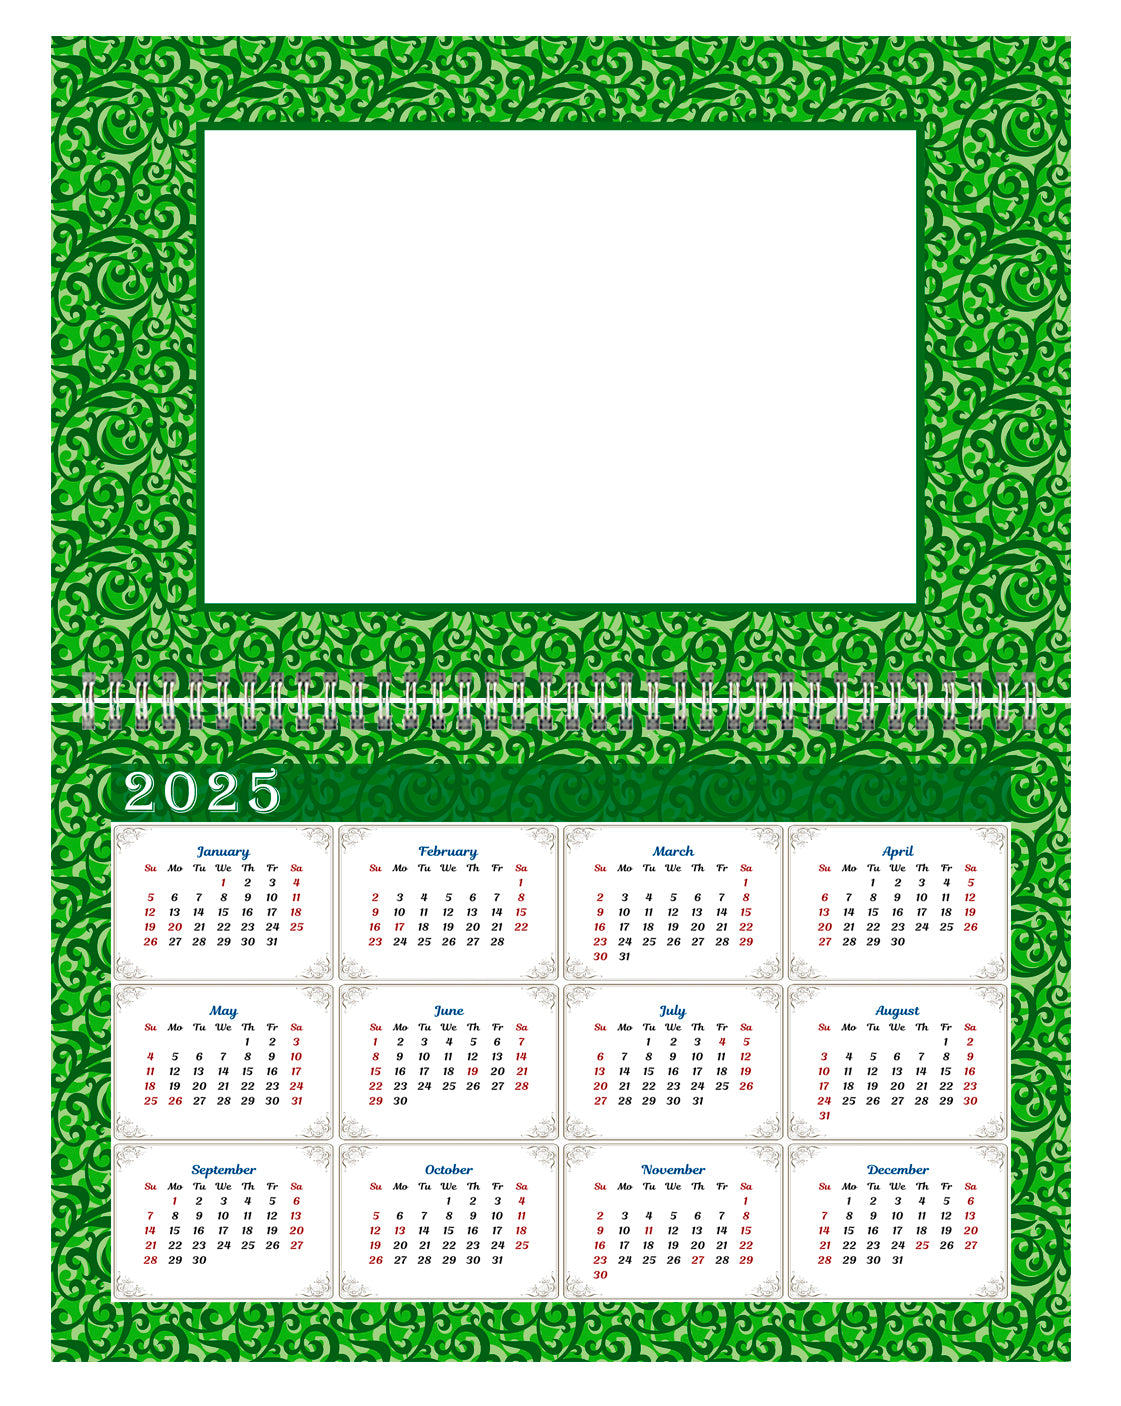 2024 Photo Frame Wall Spiral-bound Calendar (Add Your Own Photos) - 12 Months Desktop/Wall Calendar/Planner - (Edition #06)